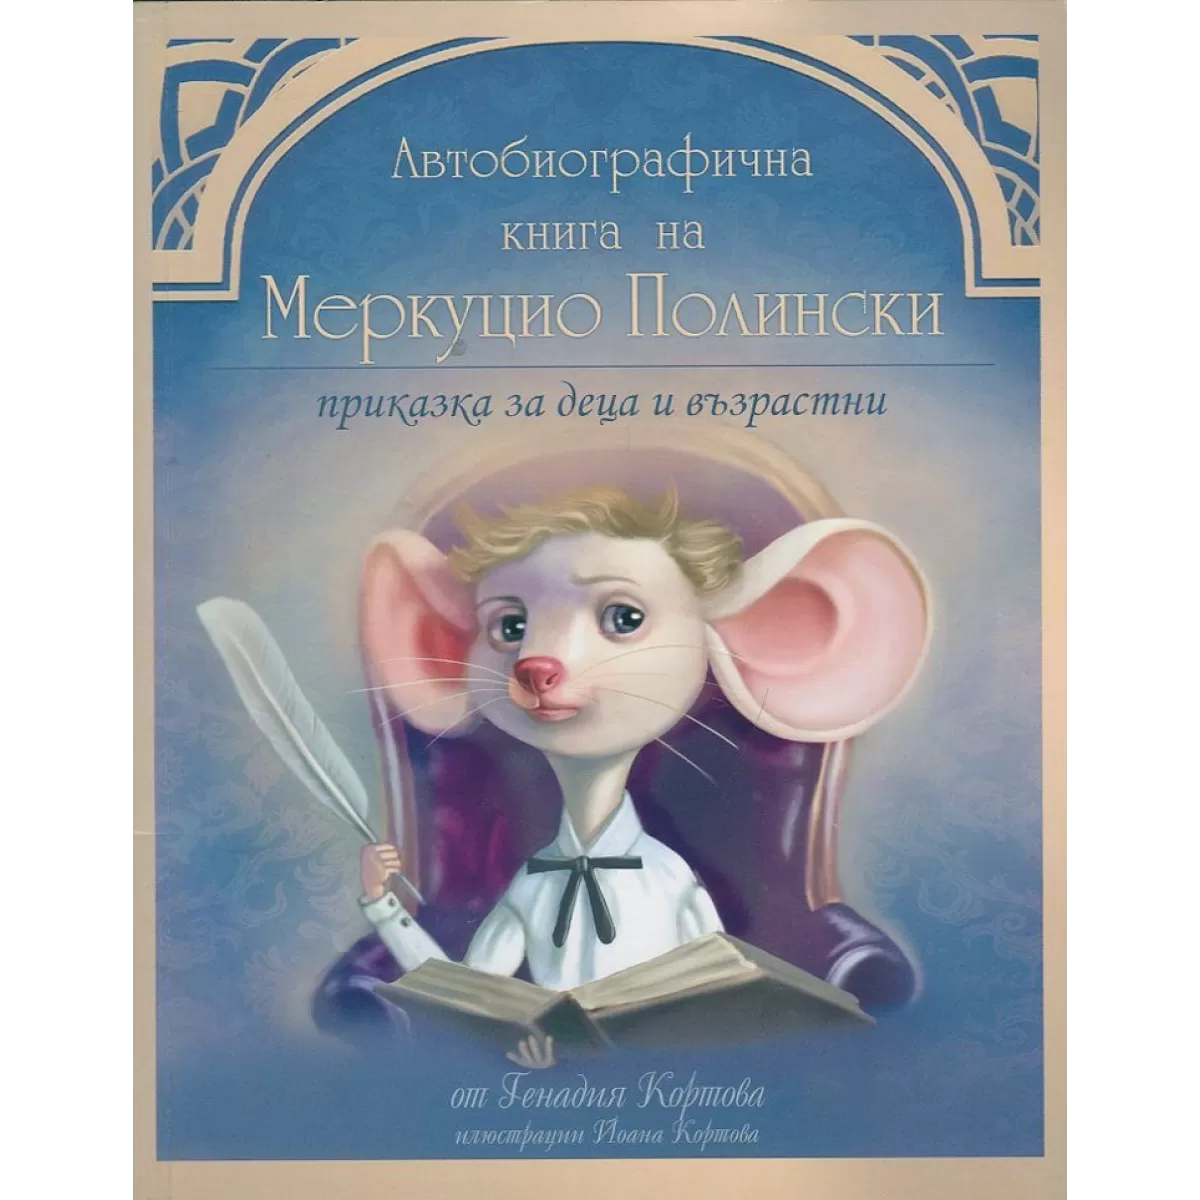 Автобиографична книга на Меркуцио Полински. Приказка за деца и възрастни